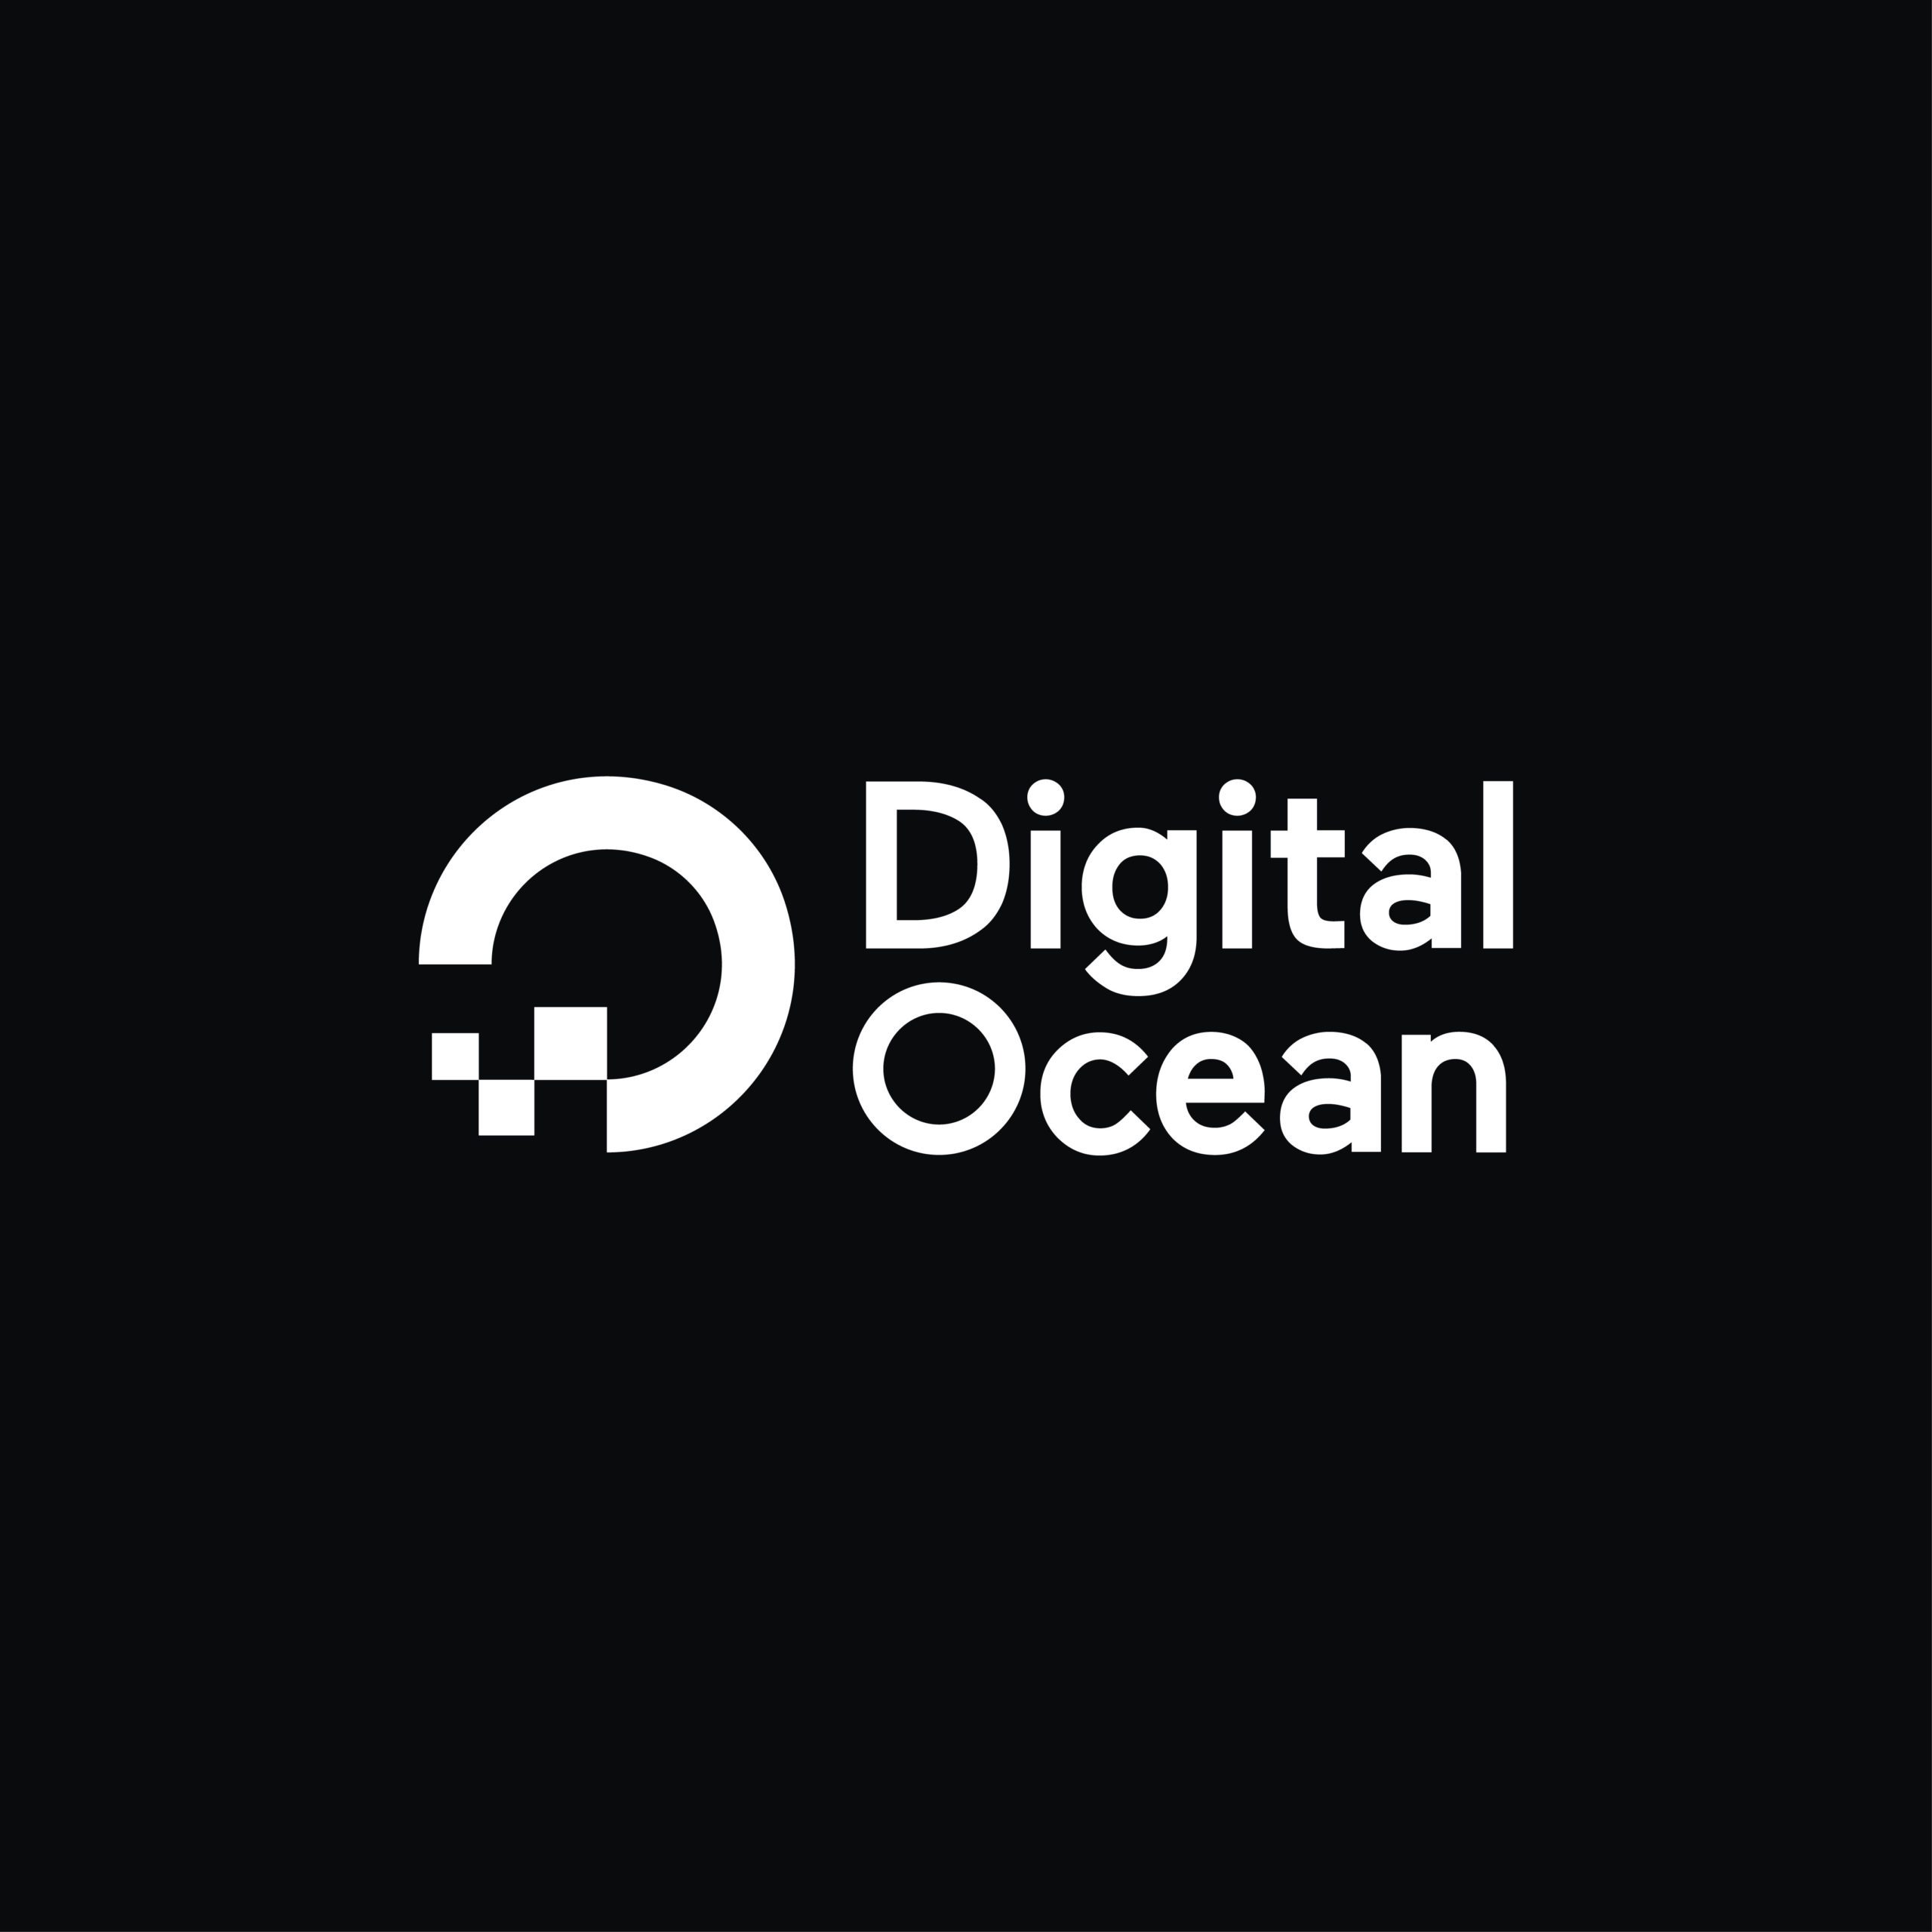 DigitalOcean | Reech